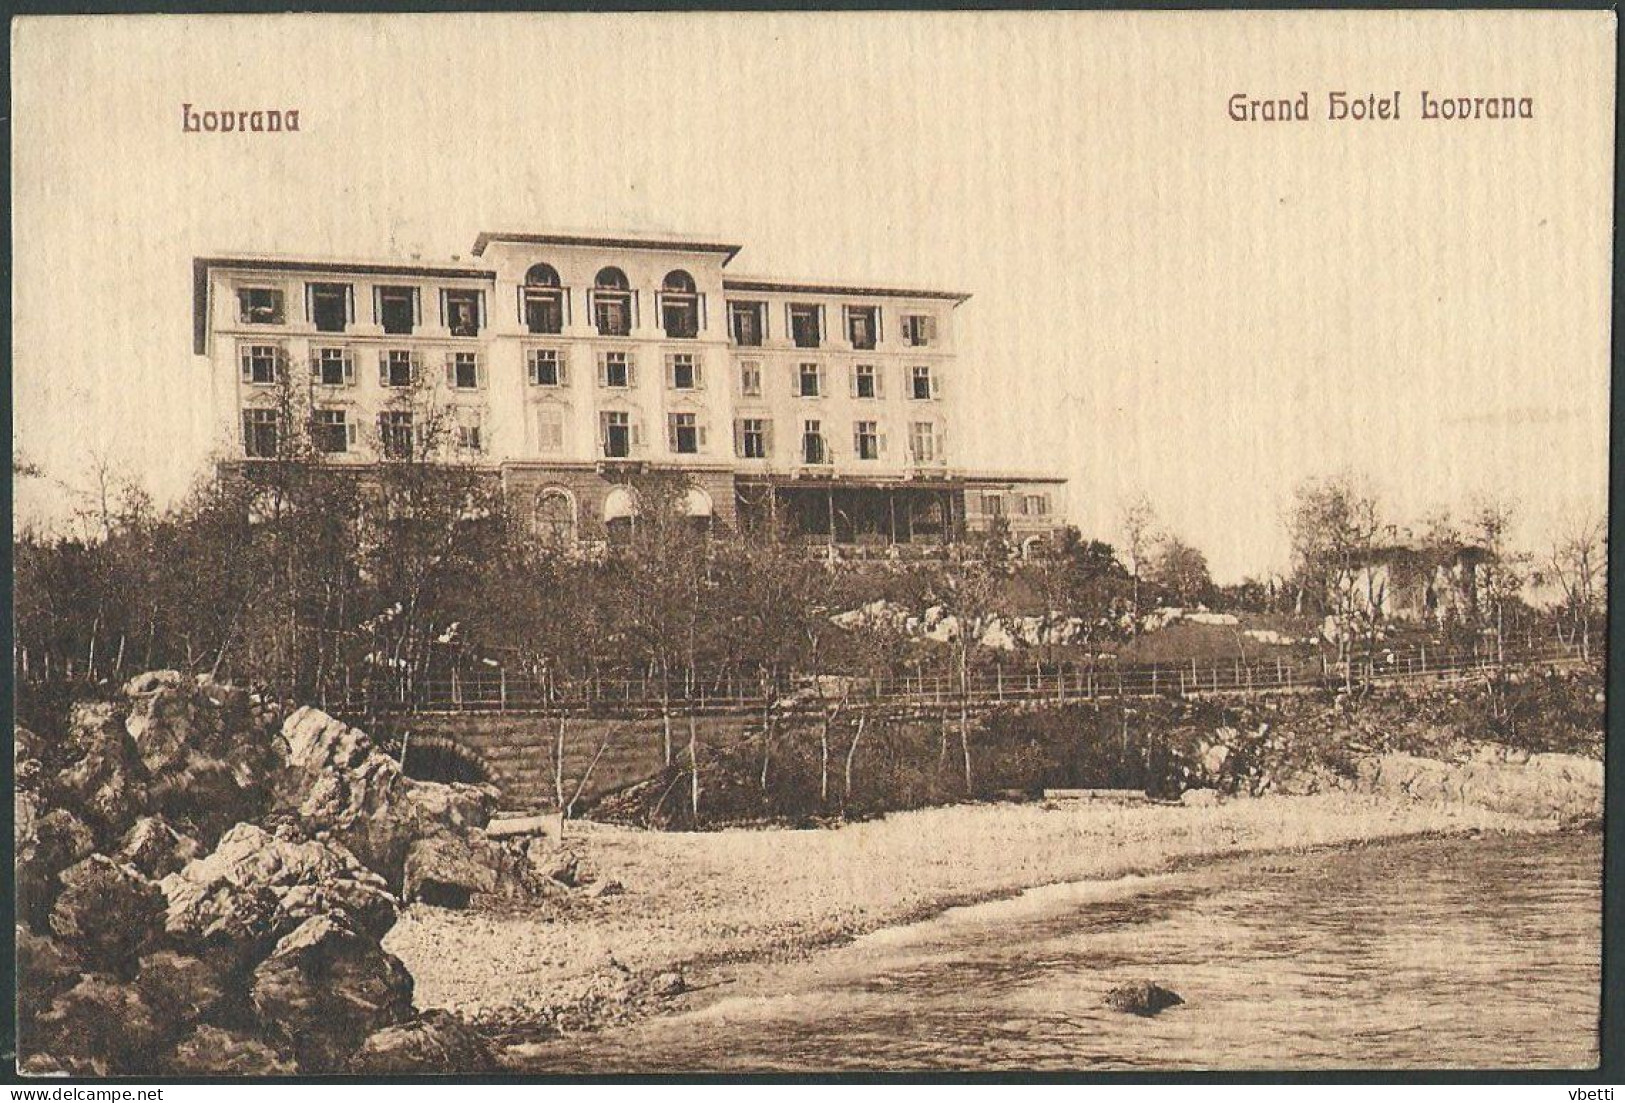 Croatia / Hrvatska: Lovrana (Lovran / Laurana), Grand Hotel Lovrana  1912 - Croatia